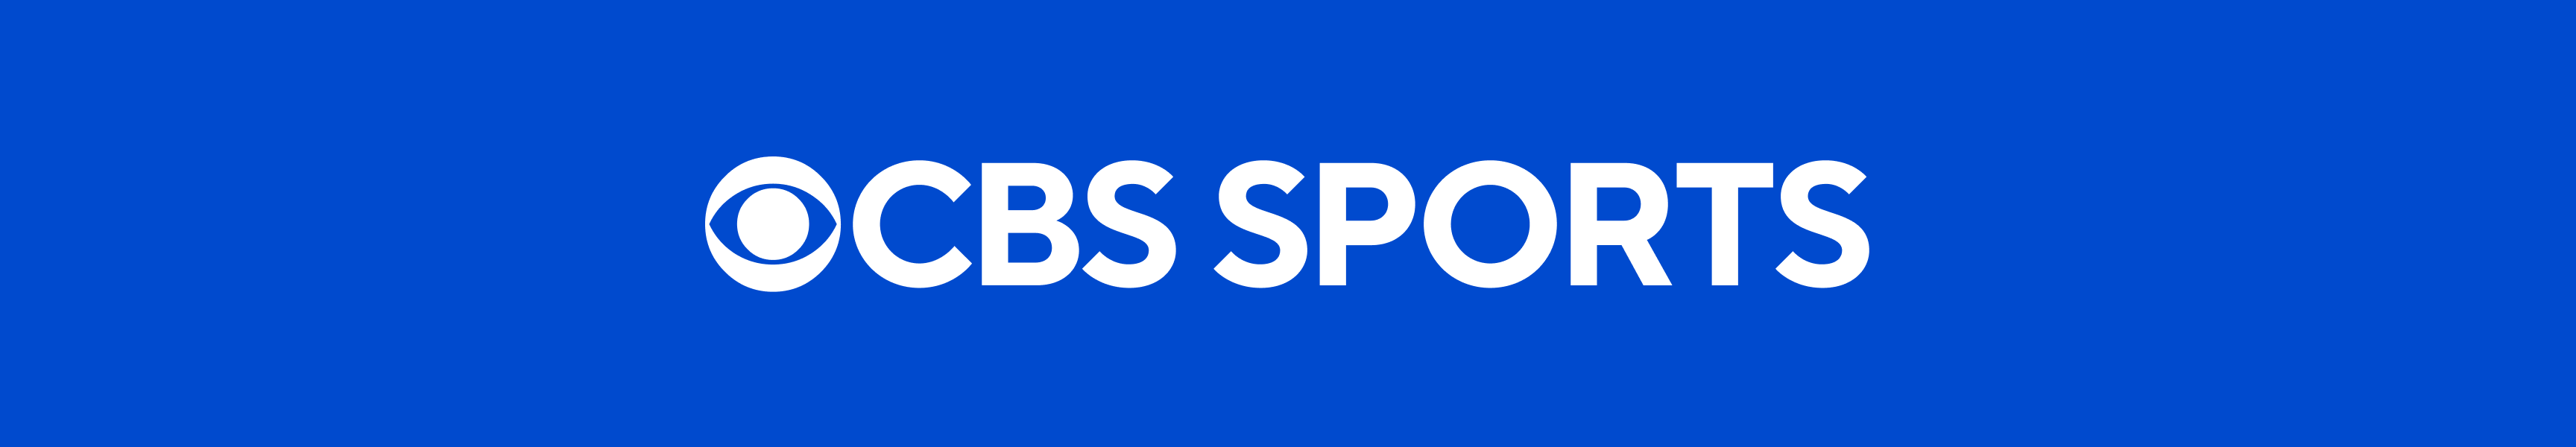 CBS Sports Schönheit